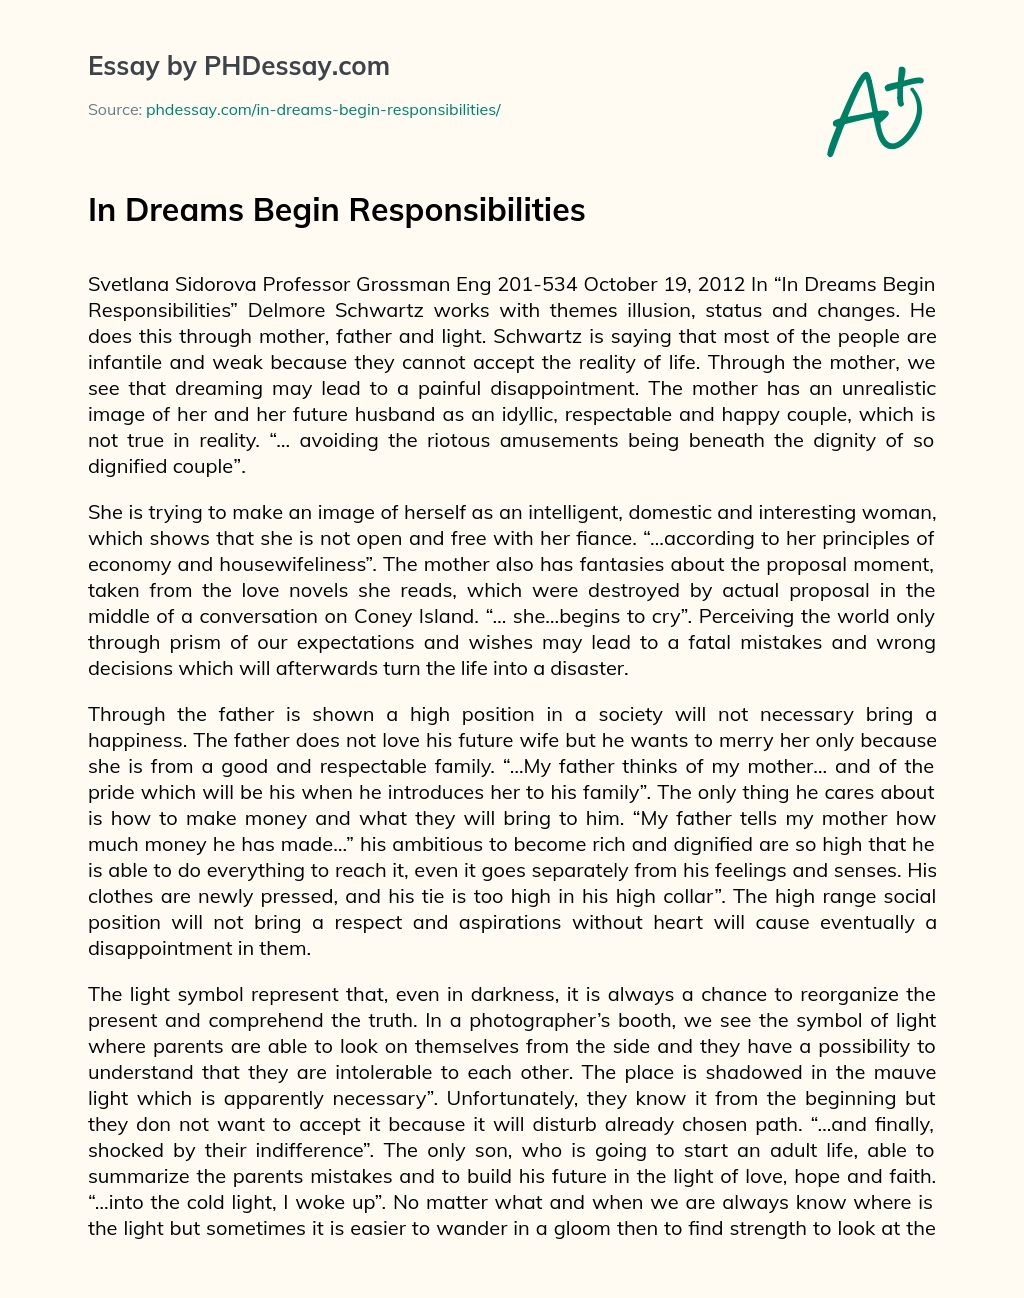 In Dreams Begin Responsibilities essay